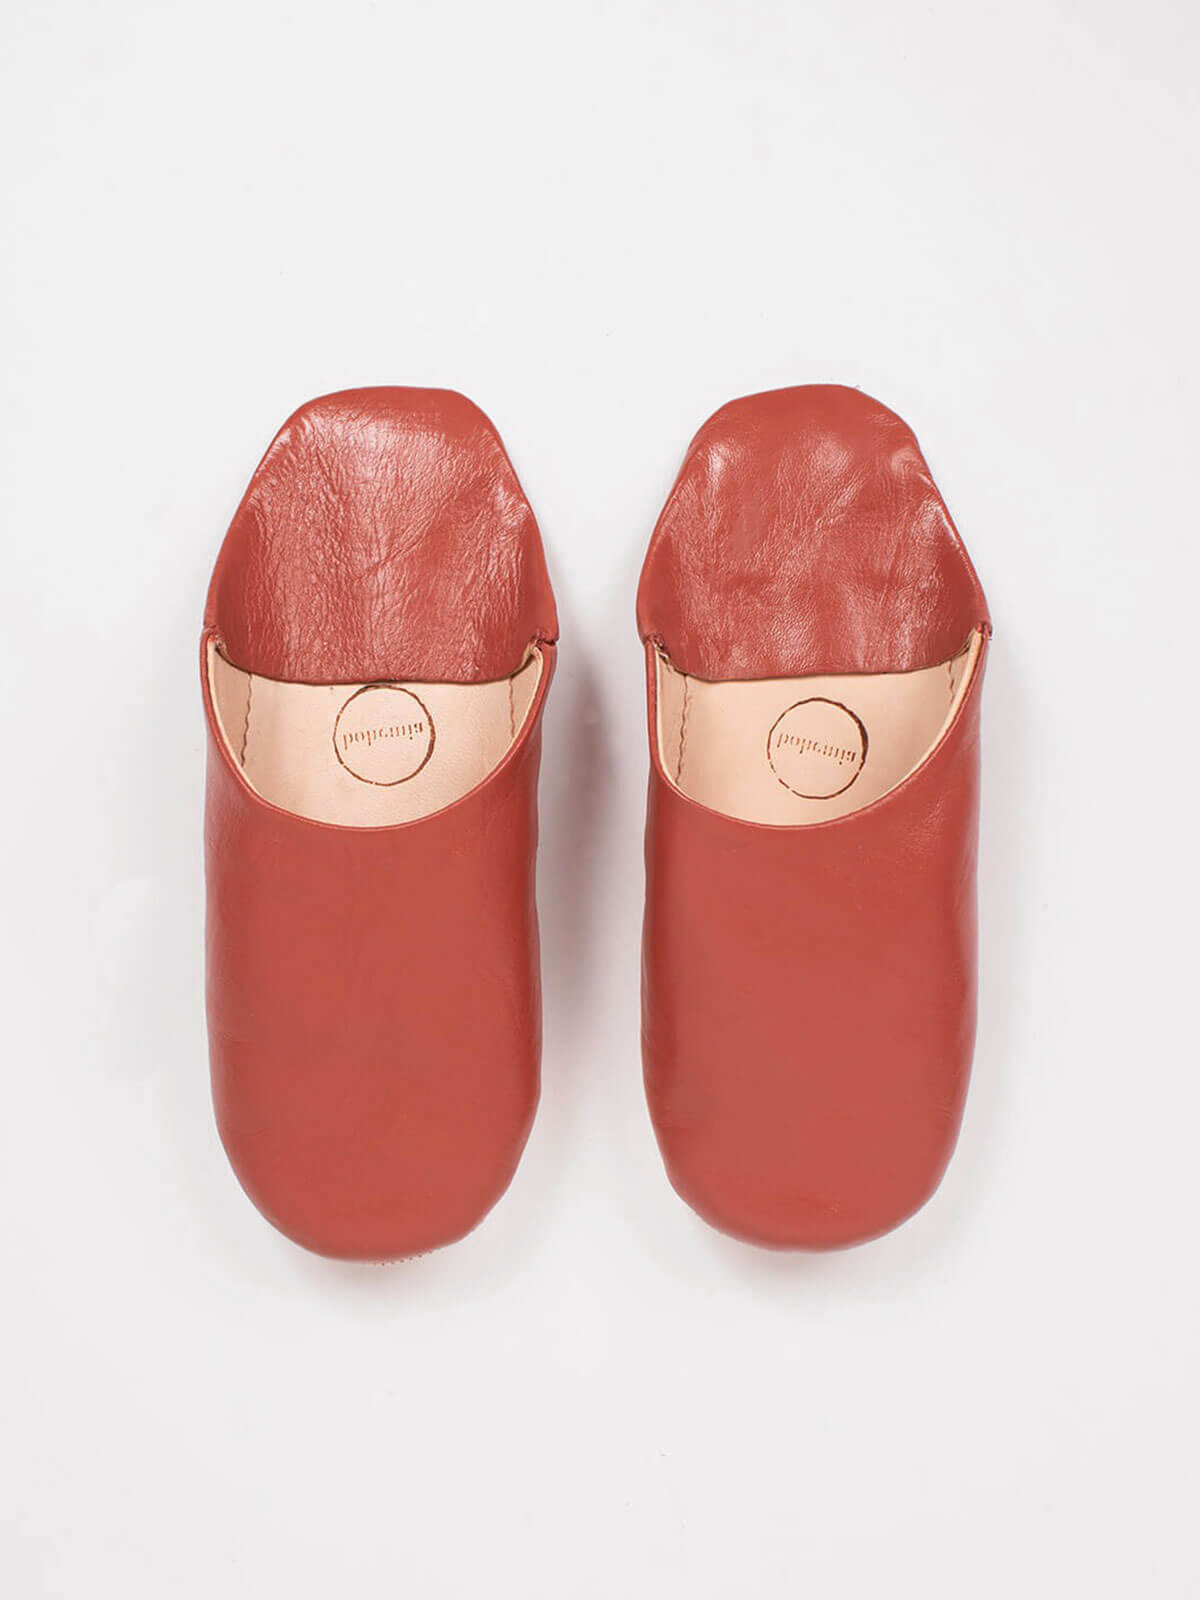 Moroccan-babouche-womens-slippers-terracotta-BohemiaDesign_103eb859-2382-46c0-b3eb-3af20ce92eab.jpg